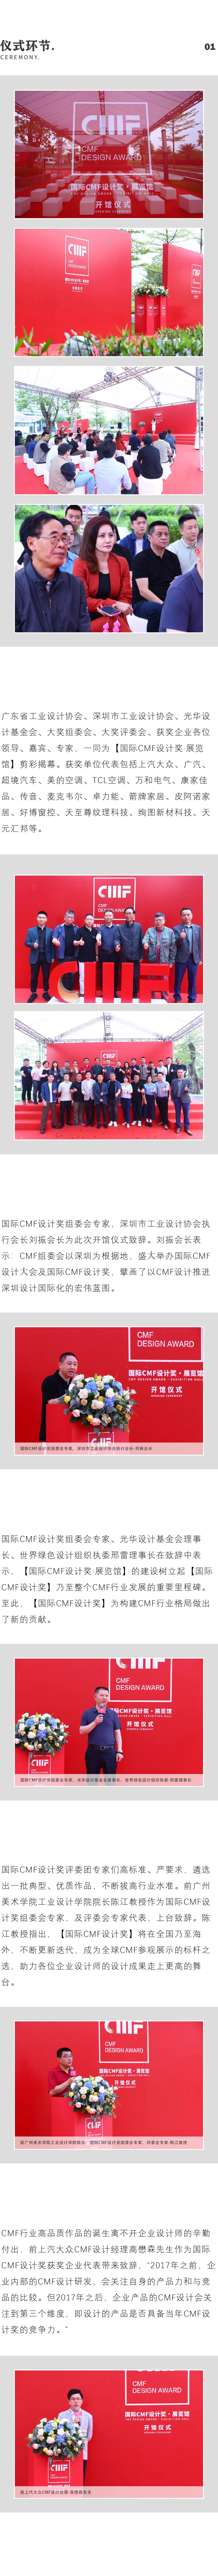 全球CMF行业首个博物馆！国际CMF设计奖·展览馆开馆